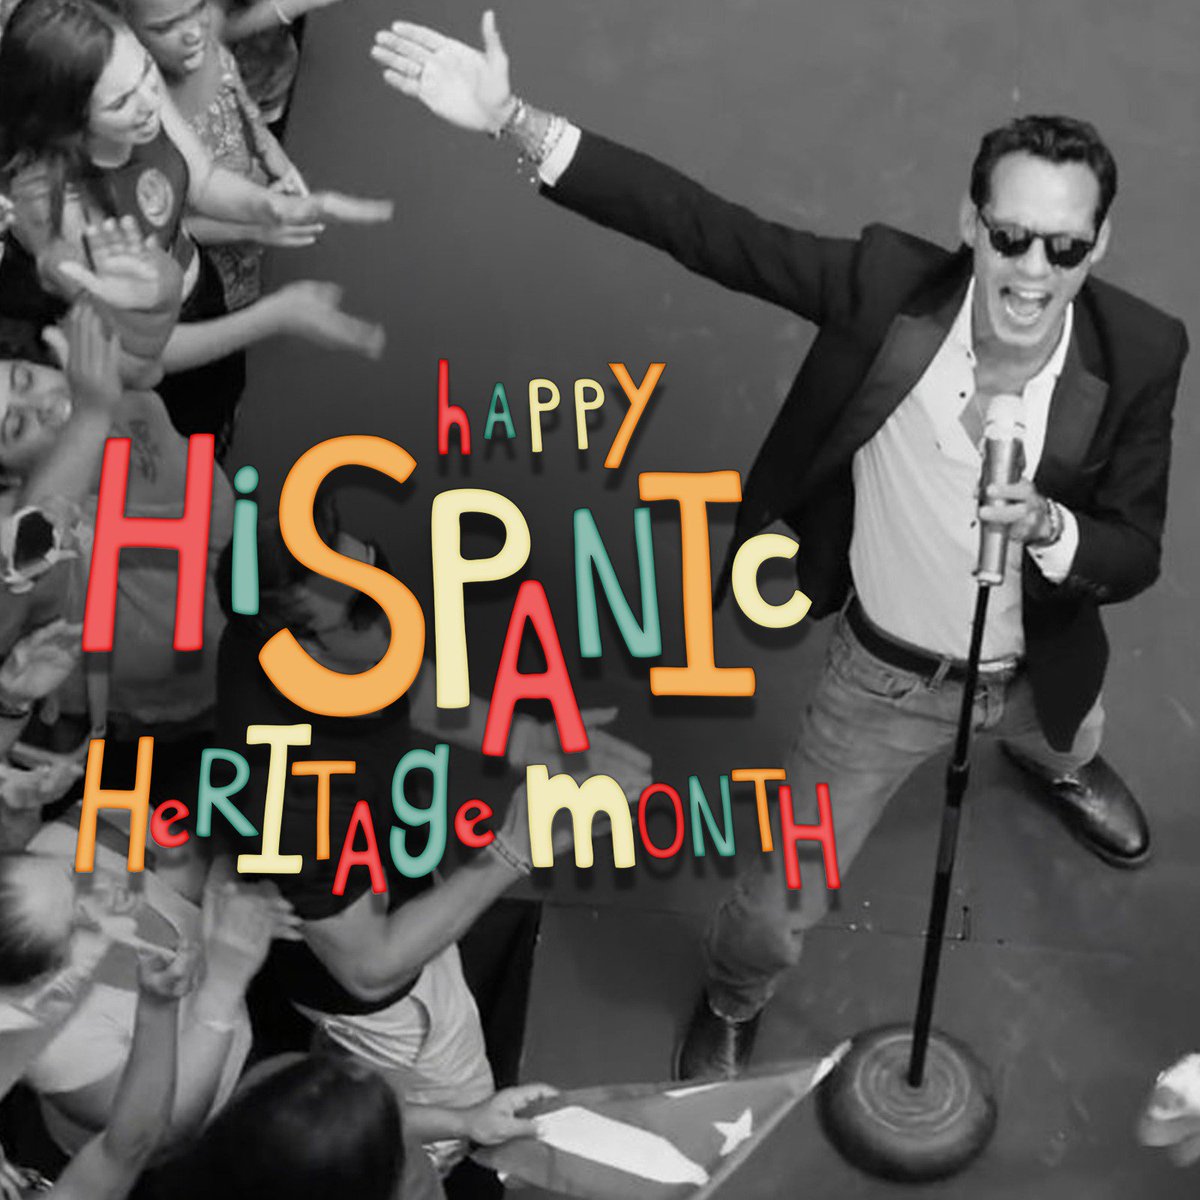 ¡Feliz Mes de la Herencia Hispana! Celebremos nuestra cultura, historia y orgullo. https://t.co/5ncrkhOPwu